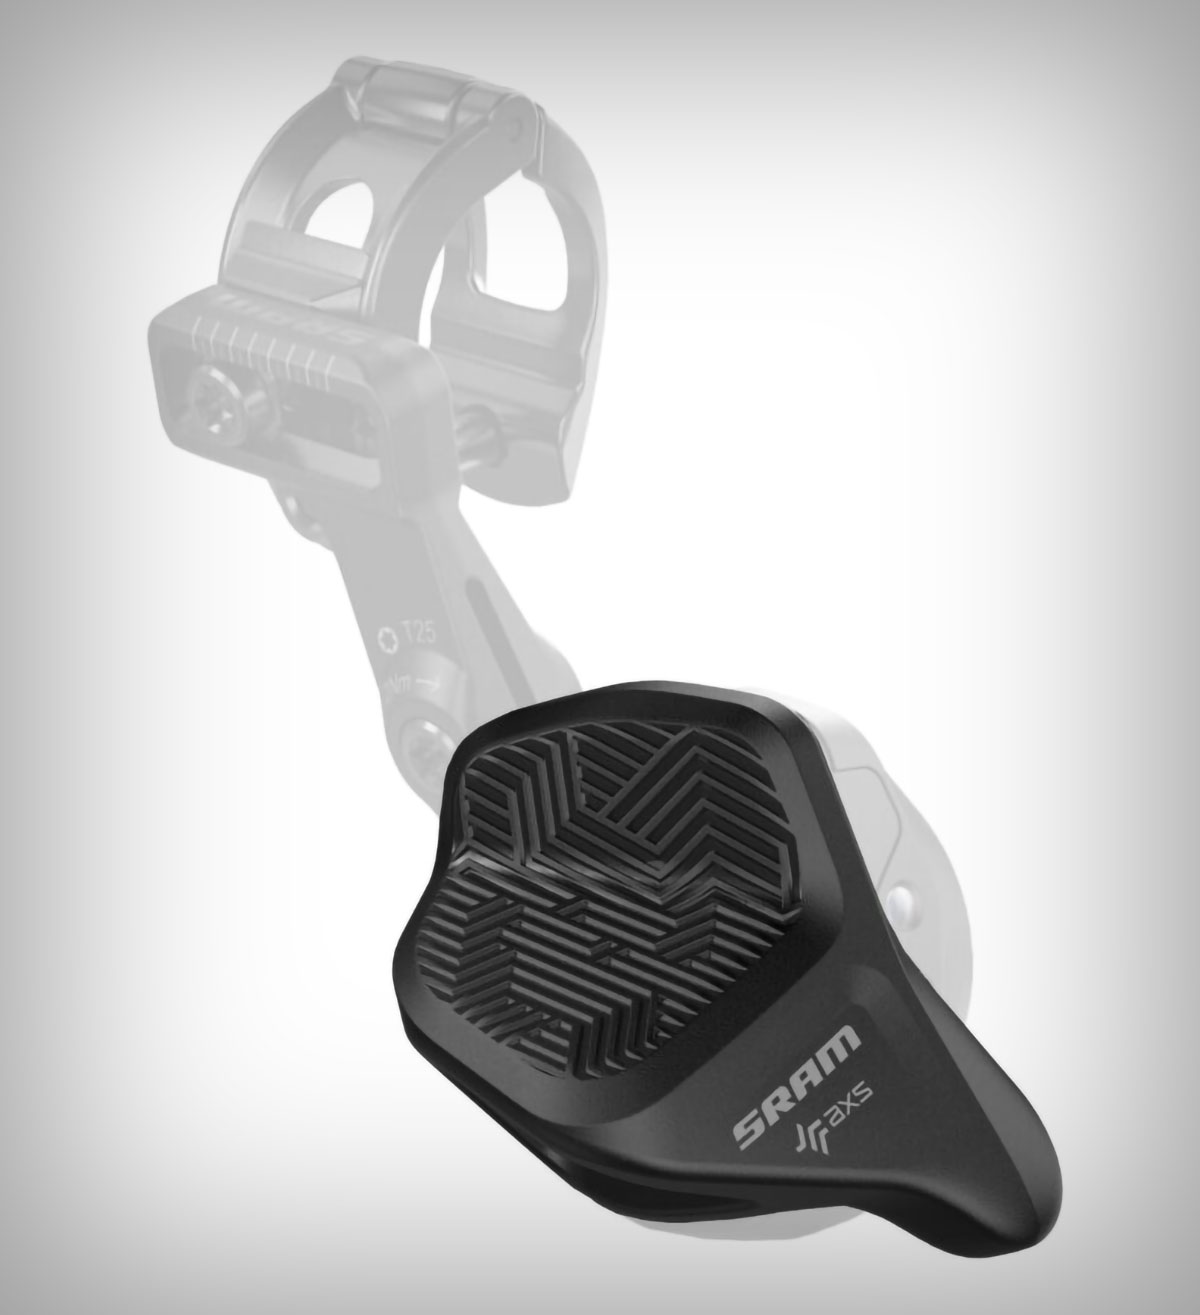 SRAM presenta el AXS Pod Rocker, un nuevo pulsador que recupera la ergonomía clásica de las manetas de MTB